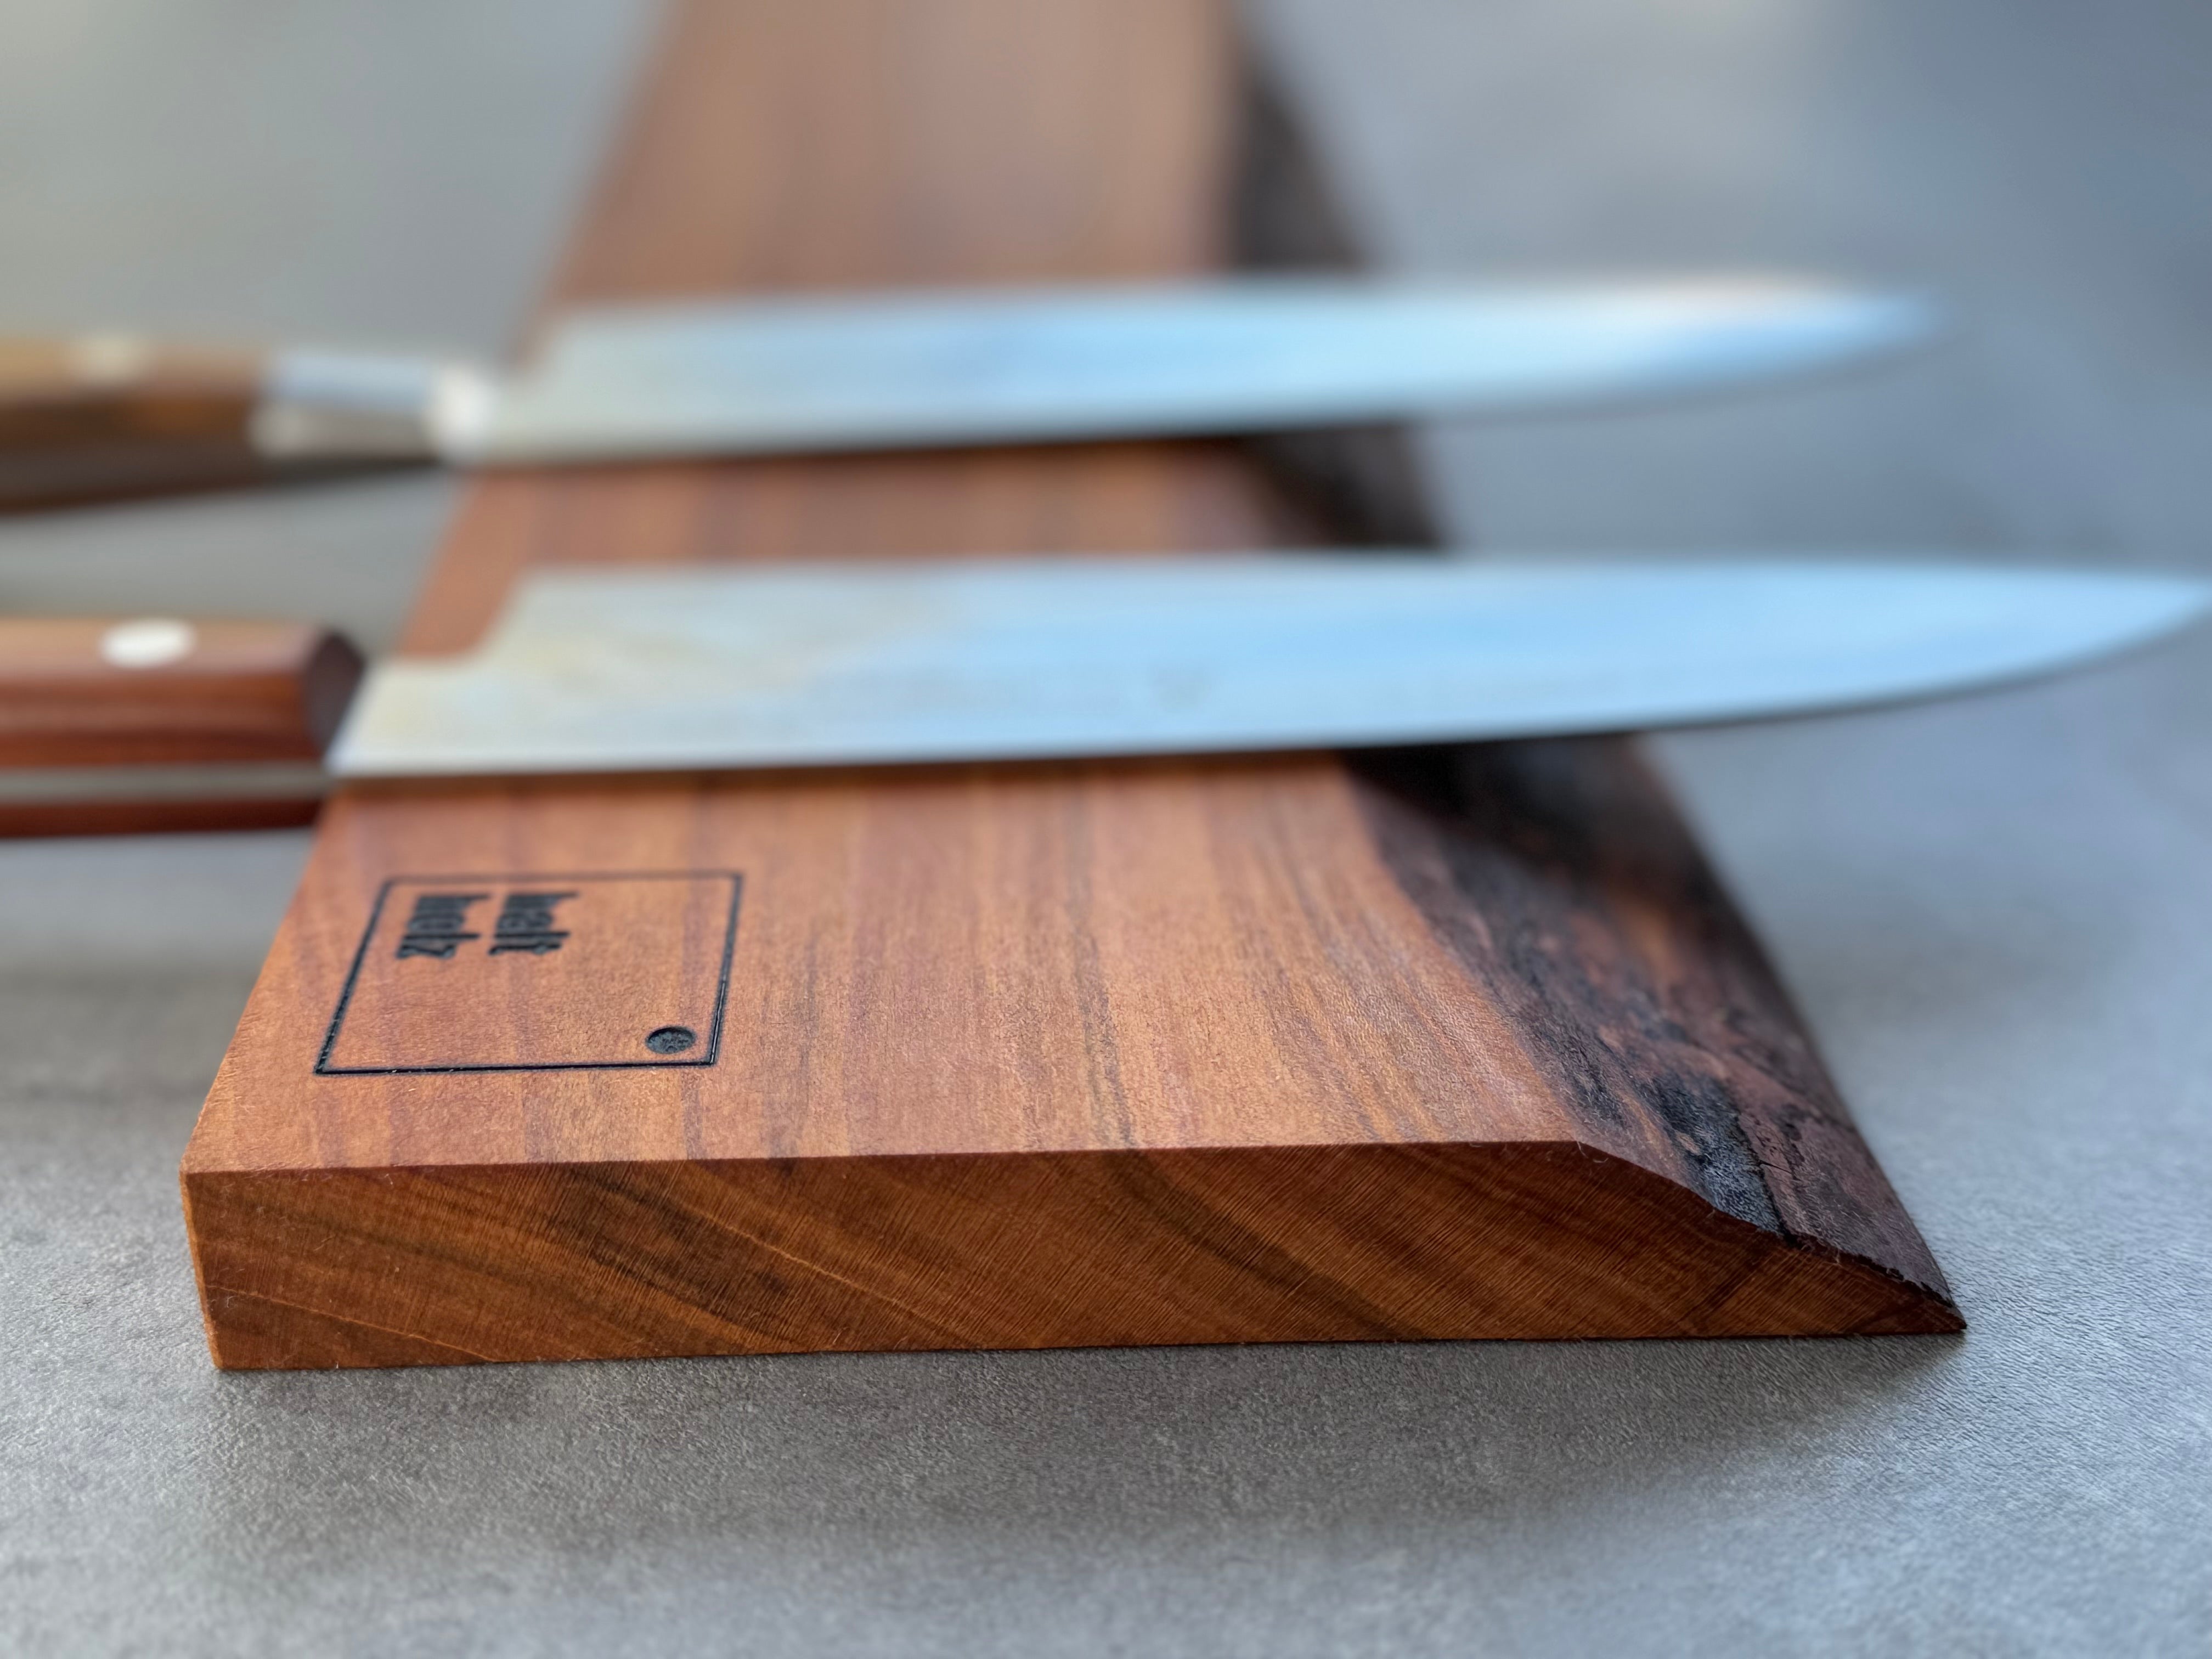 Detailansicht der Baumkante bei einer Messerleiste.